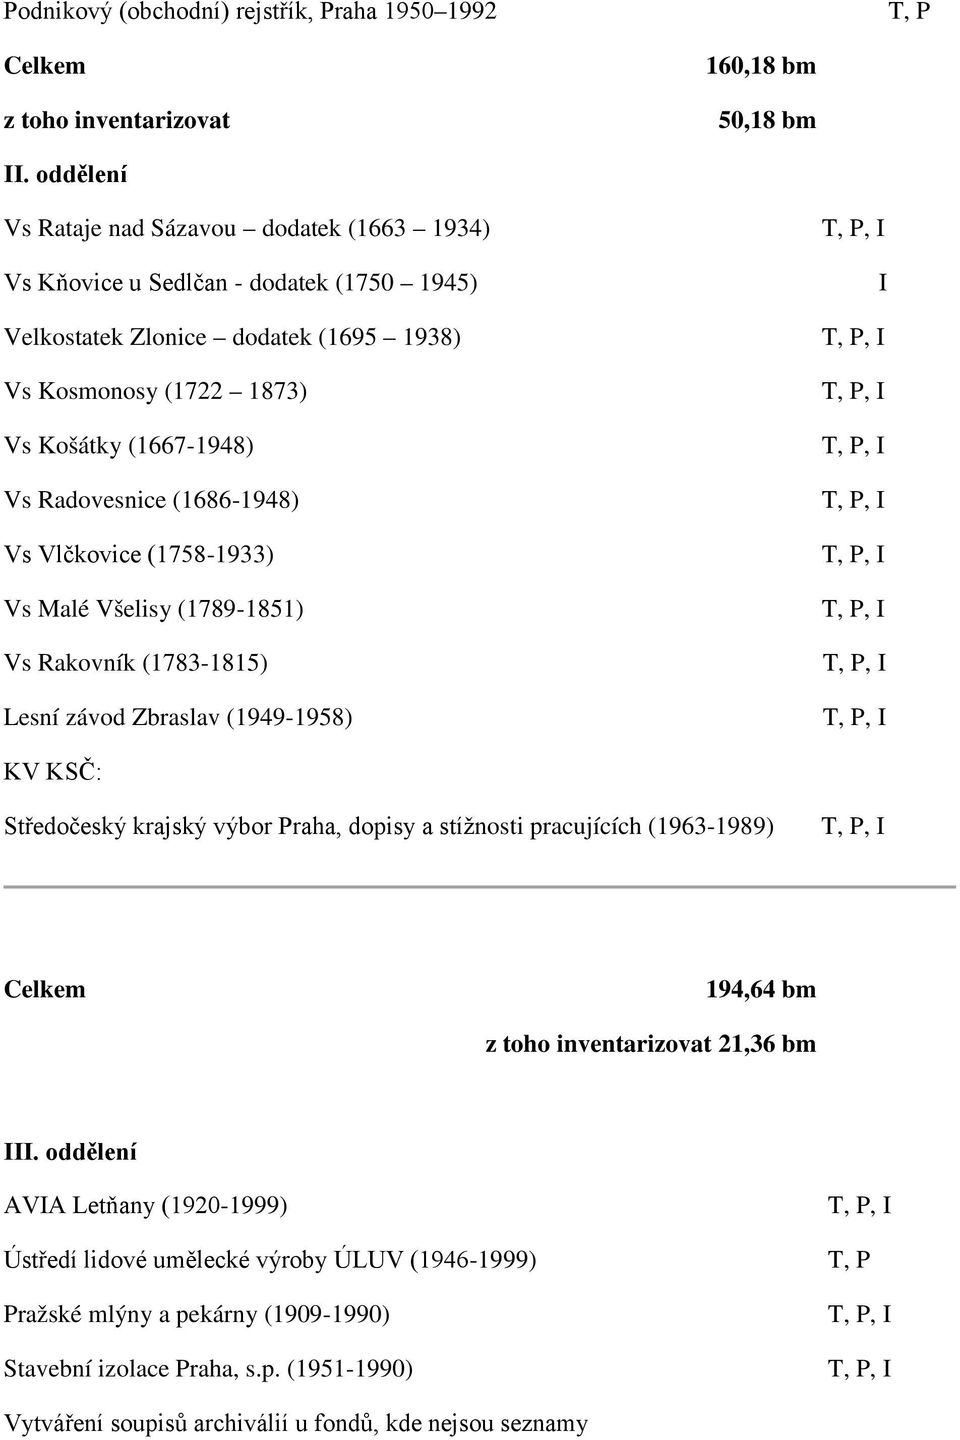 (1686-1948) Vs Vlčkovice (1758-1933) Vs Malé Všelisy (1789-1851) Vs Rakovník (1783-1815) Lesní závod Zbraslav (1949-1958) T, P, T, P, T, P, T, P, T, P, T, P, T, P, T, P, T, P, KV KSČ: Středočeský